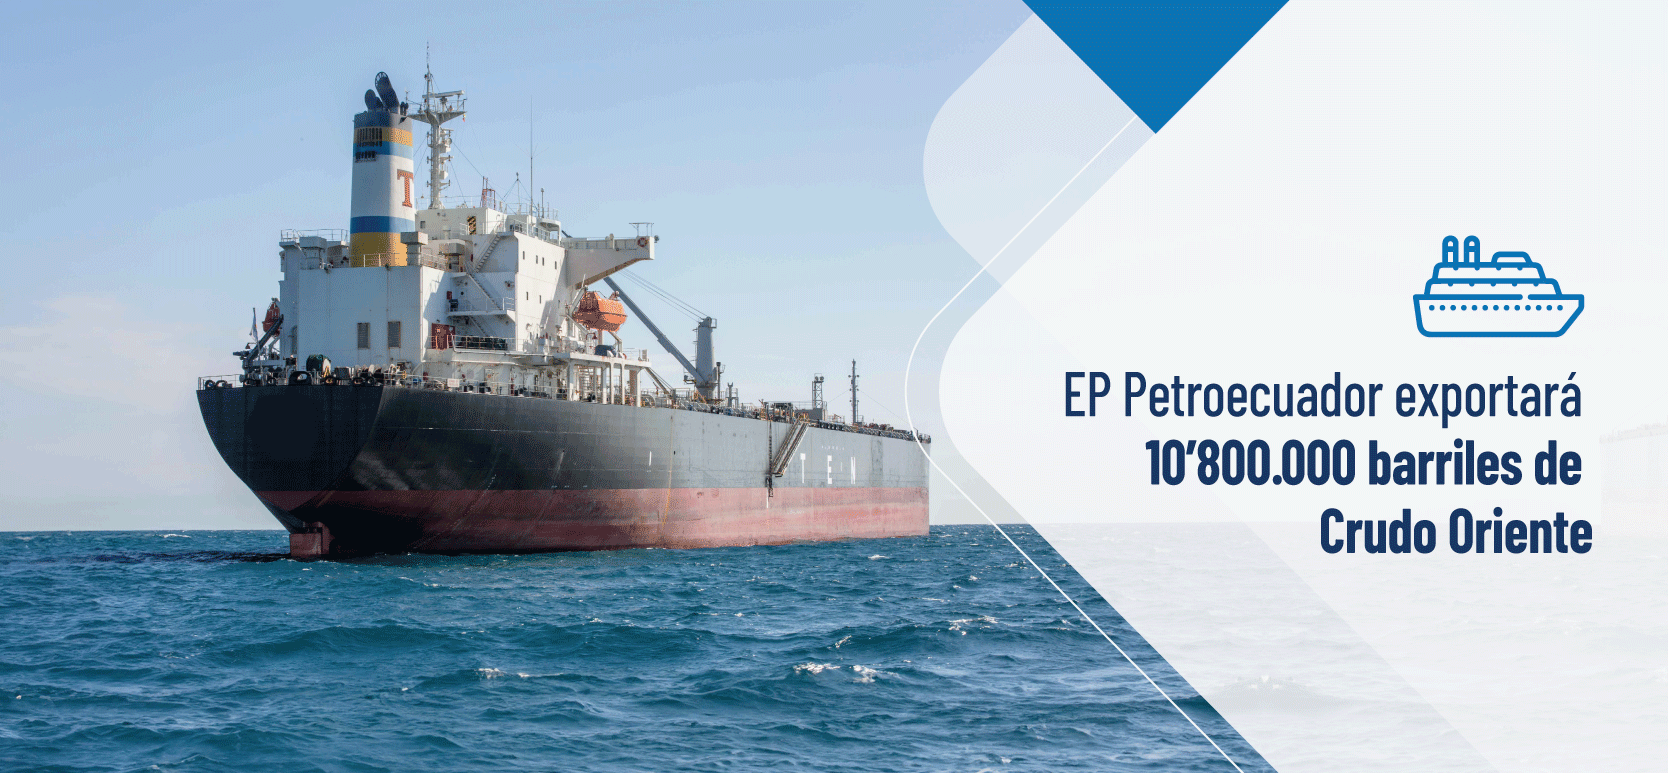 EP Petroecuador exportará 10’800.000 barriles de Crudo Oriente